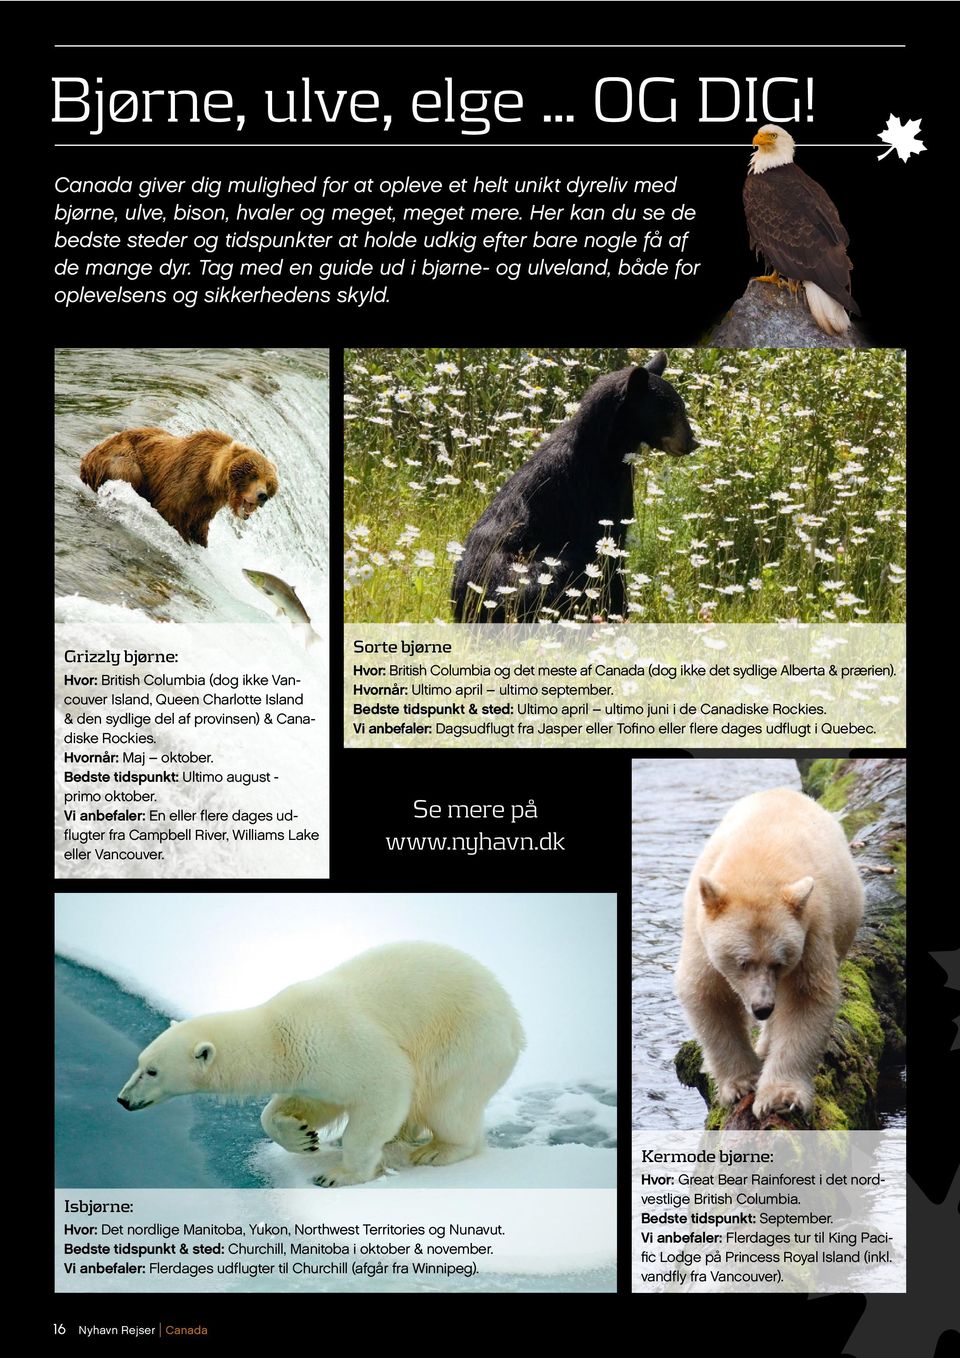 Grizzly bjørne: Hvor: British Columbia (dog ikke Vancouver Island, Queen Charlotte Island & den sydlige del af provinsen) & Canadiske Rockies. Hvornår: Maj oktober.